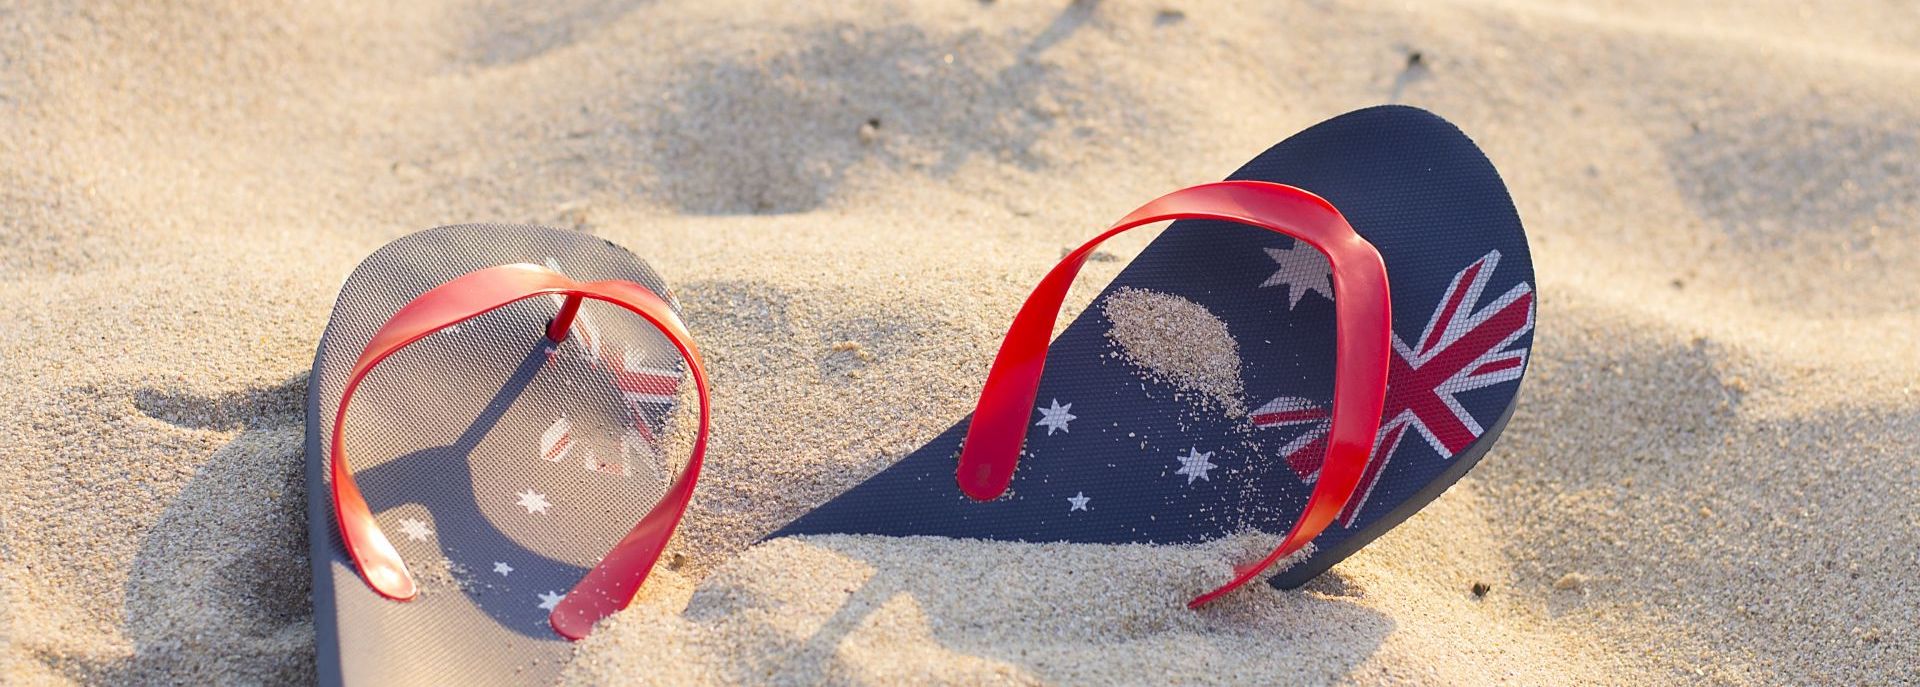 žabky na pláži v Austrálii